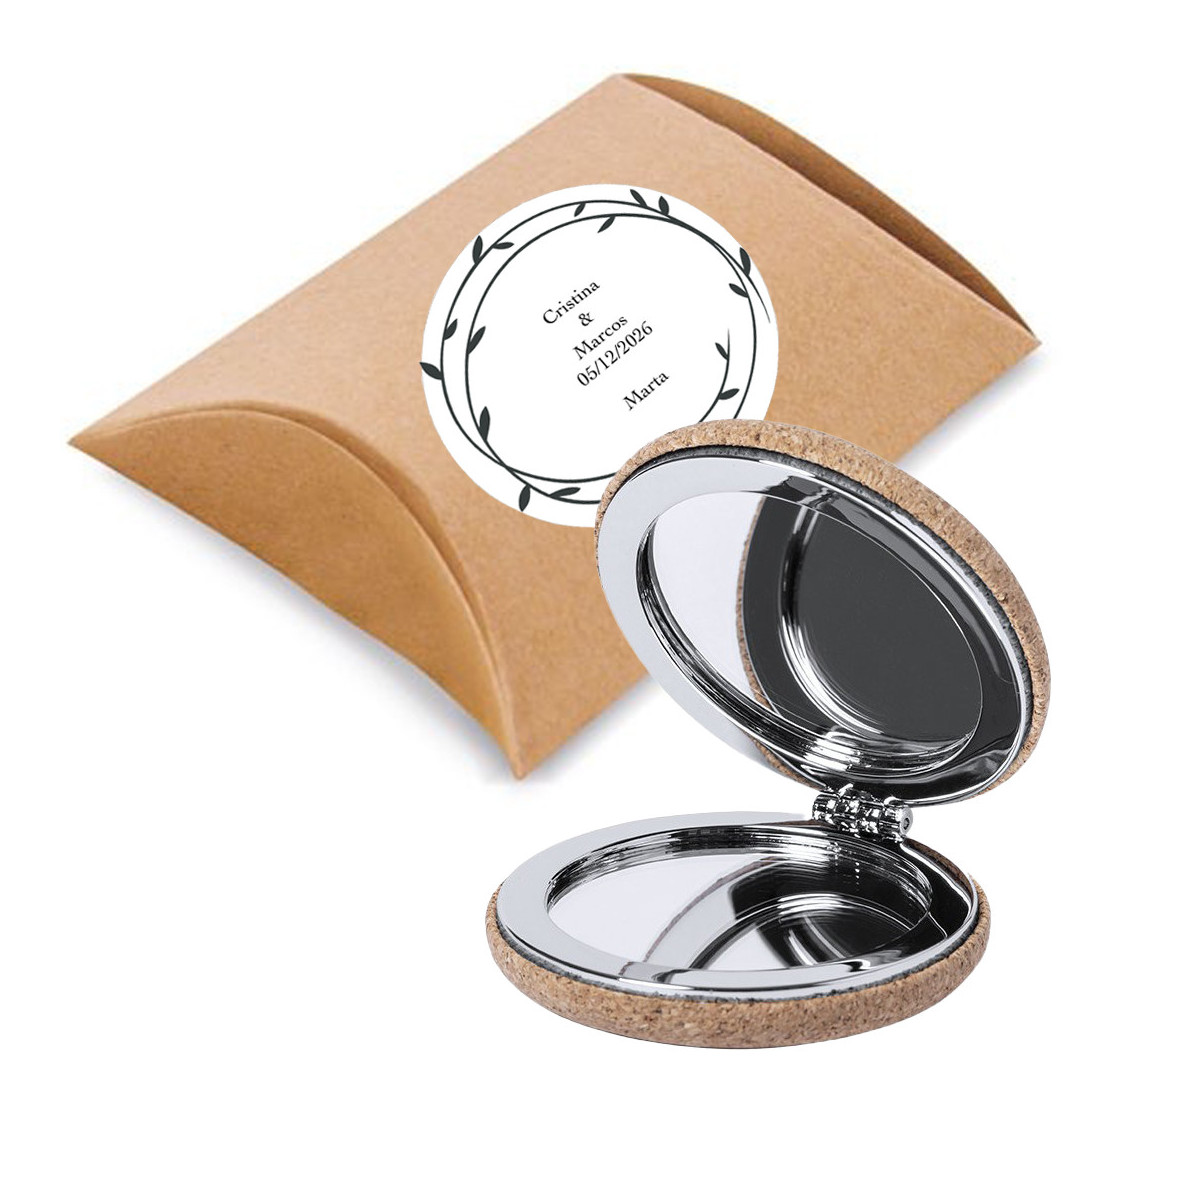 Specchio in sughero per borsa in confezione regalo con adesivo personalizzato con testo